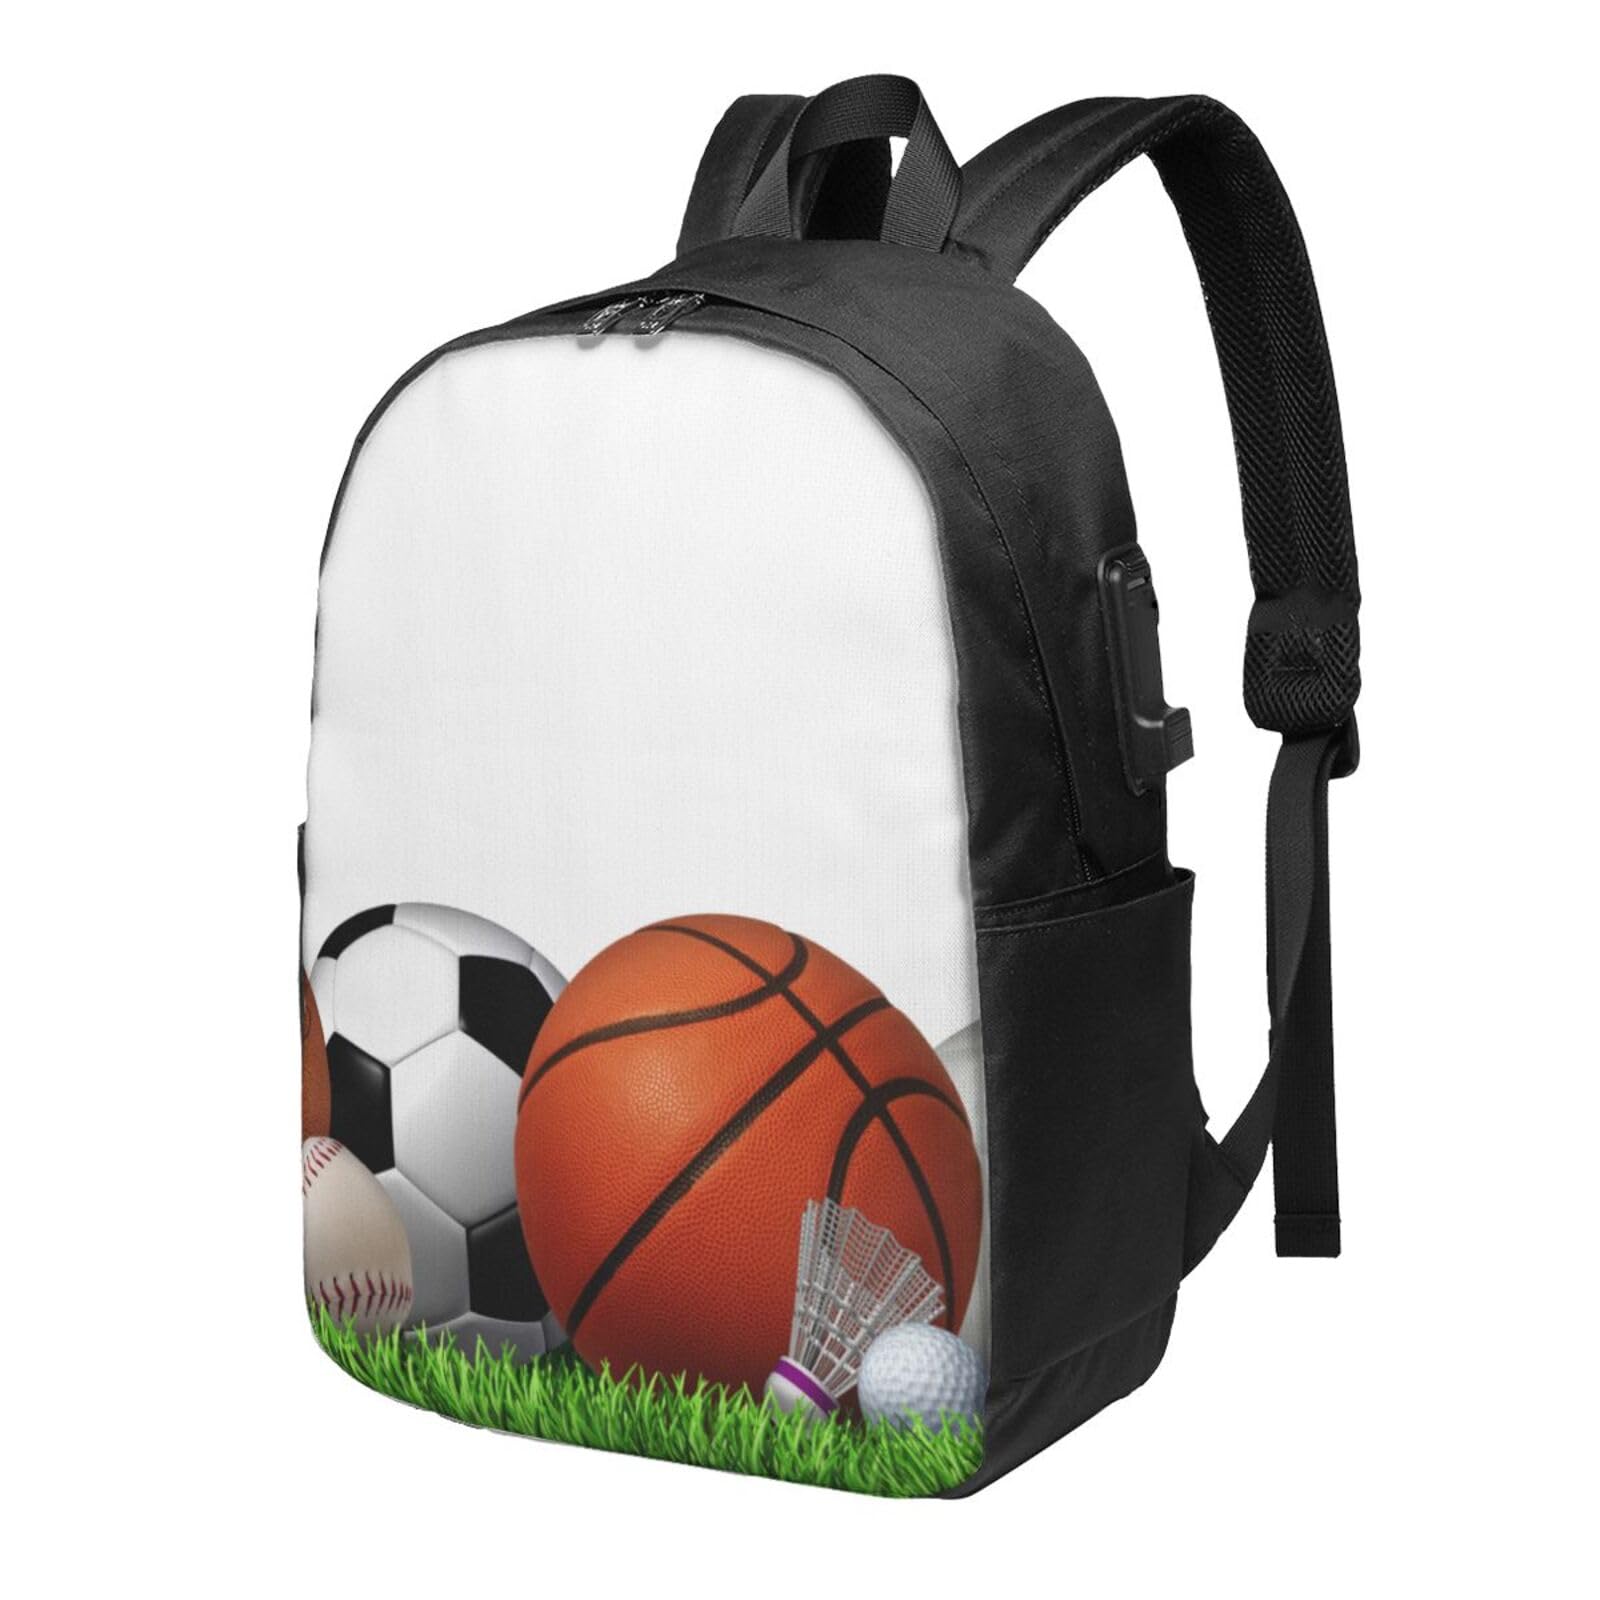 送料無料OUSIKA Sports Balls On The Grass Laptop Backpack With Usb Charging Port Water Resistant Casual Daypacks Travel Ba